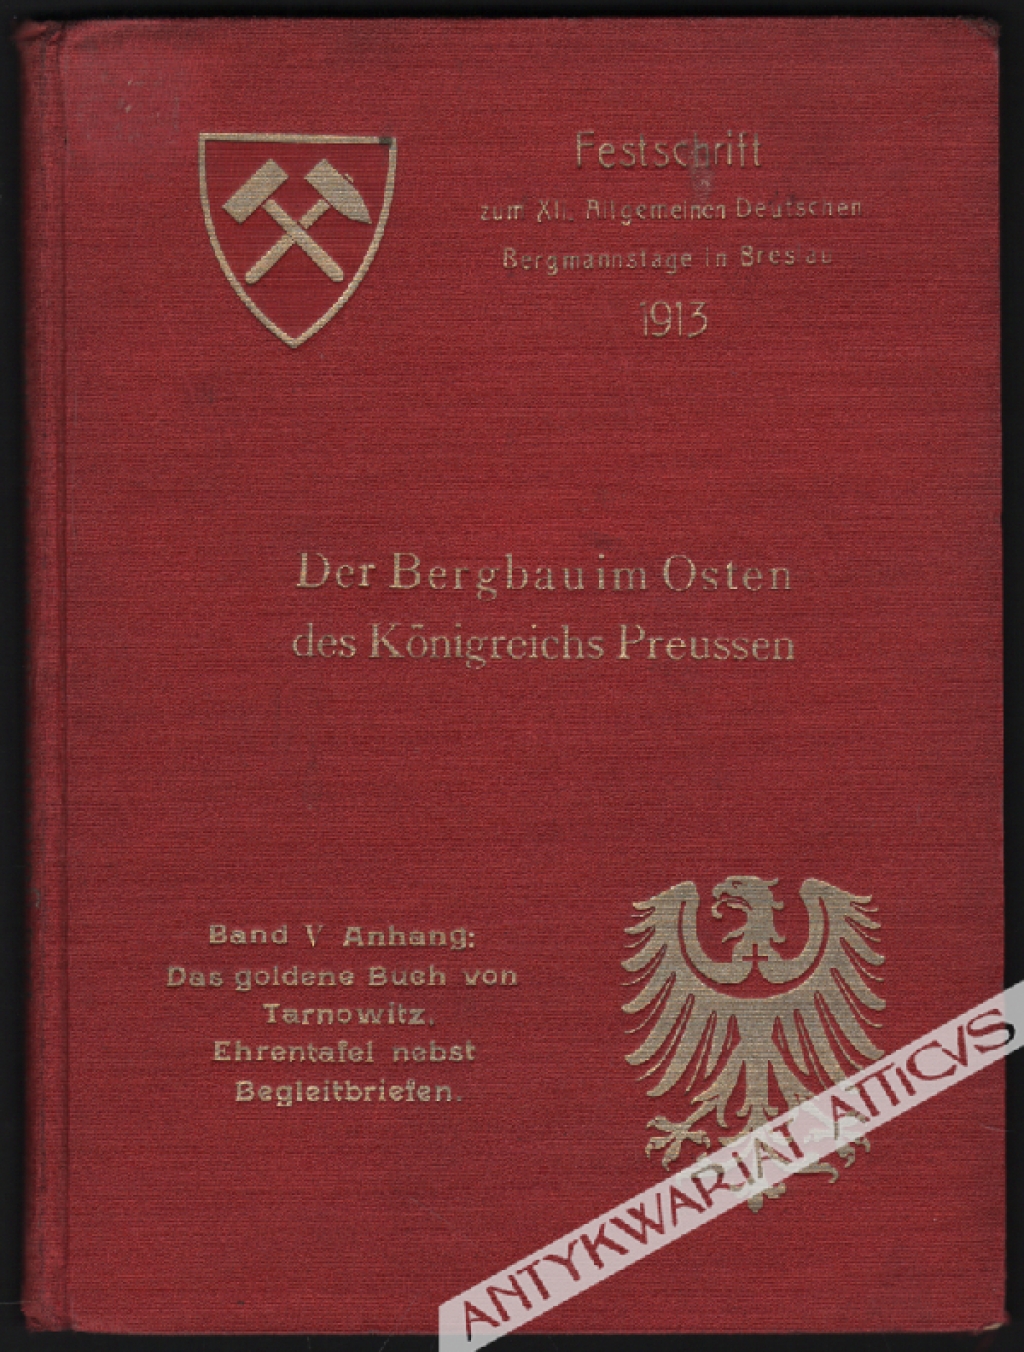 Der Bergbauim Osten des Konigreichs Preussen, Band V Anhang: Das goldene Buch von Tarnowitz. Ehrentafel nebst Begleitbriefen